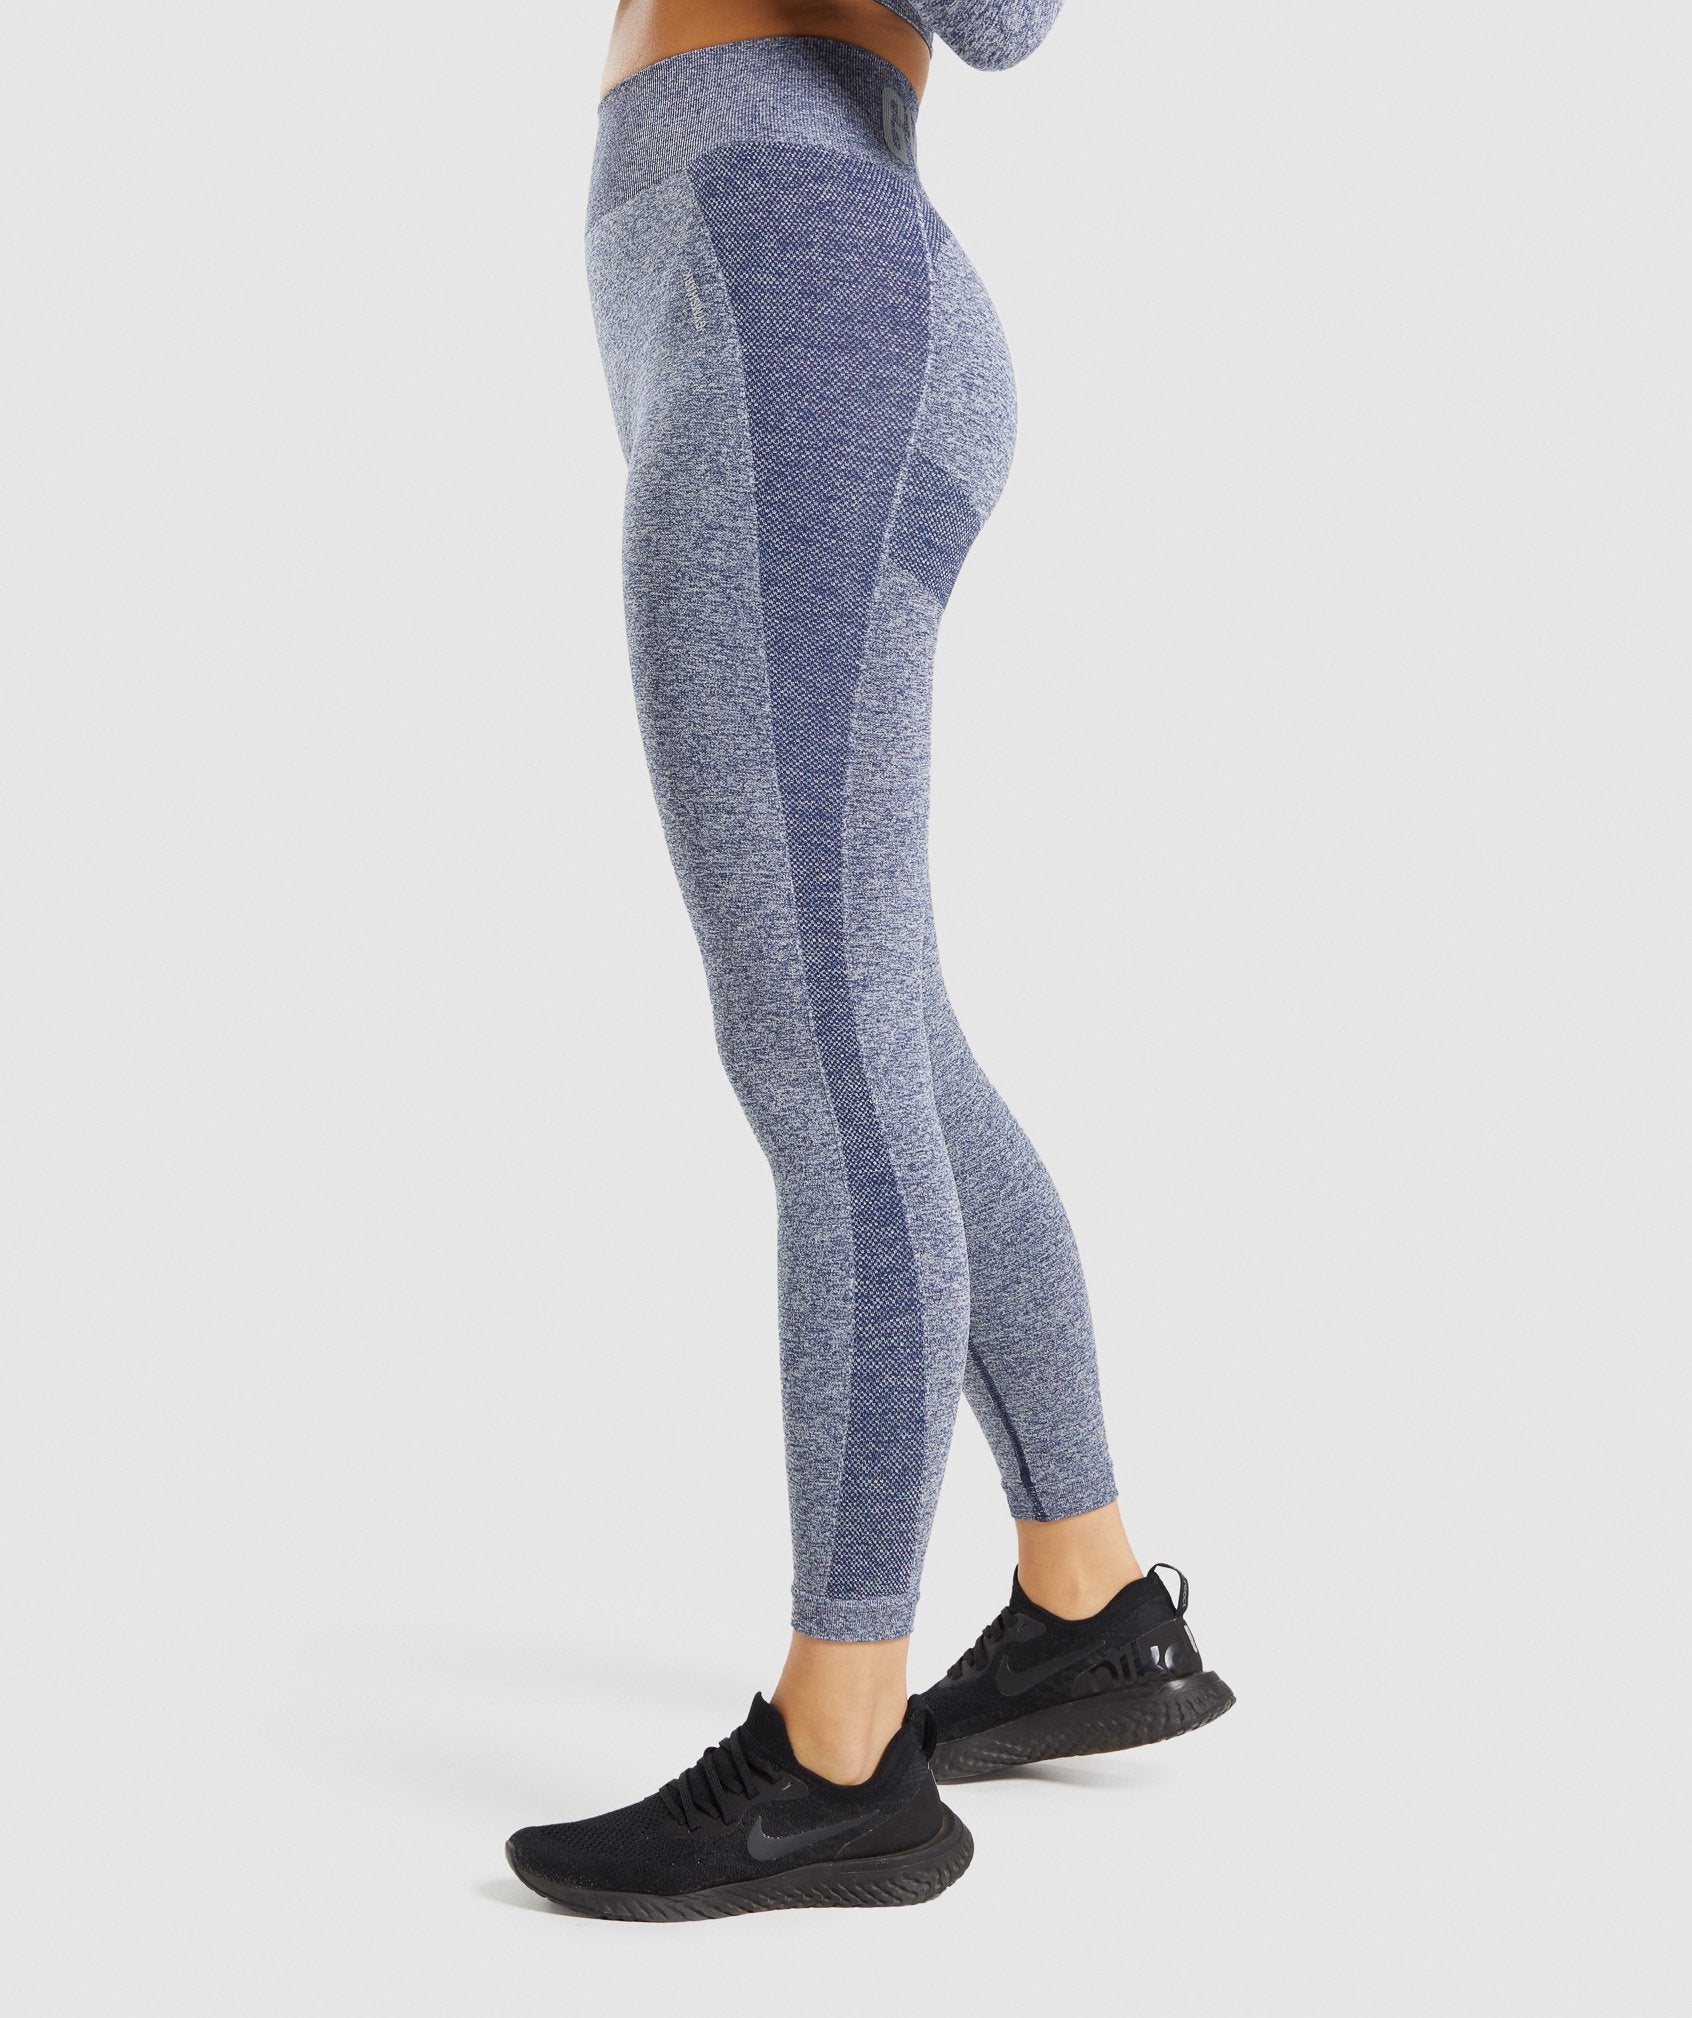 Gymshark Flex High Waisted Leggings [Light grey/ Blue], Women's Fashion,  Bottoms, Jeans & Leggings on Carousell